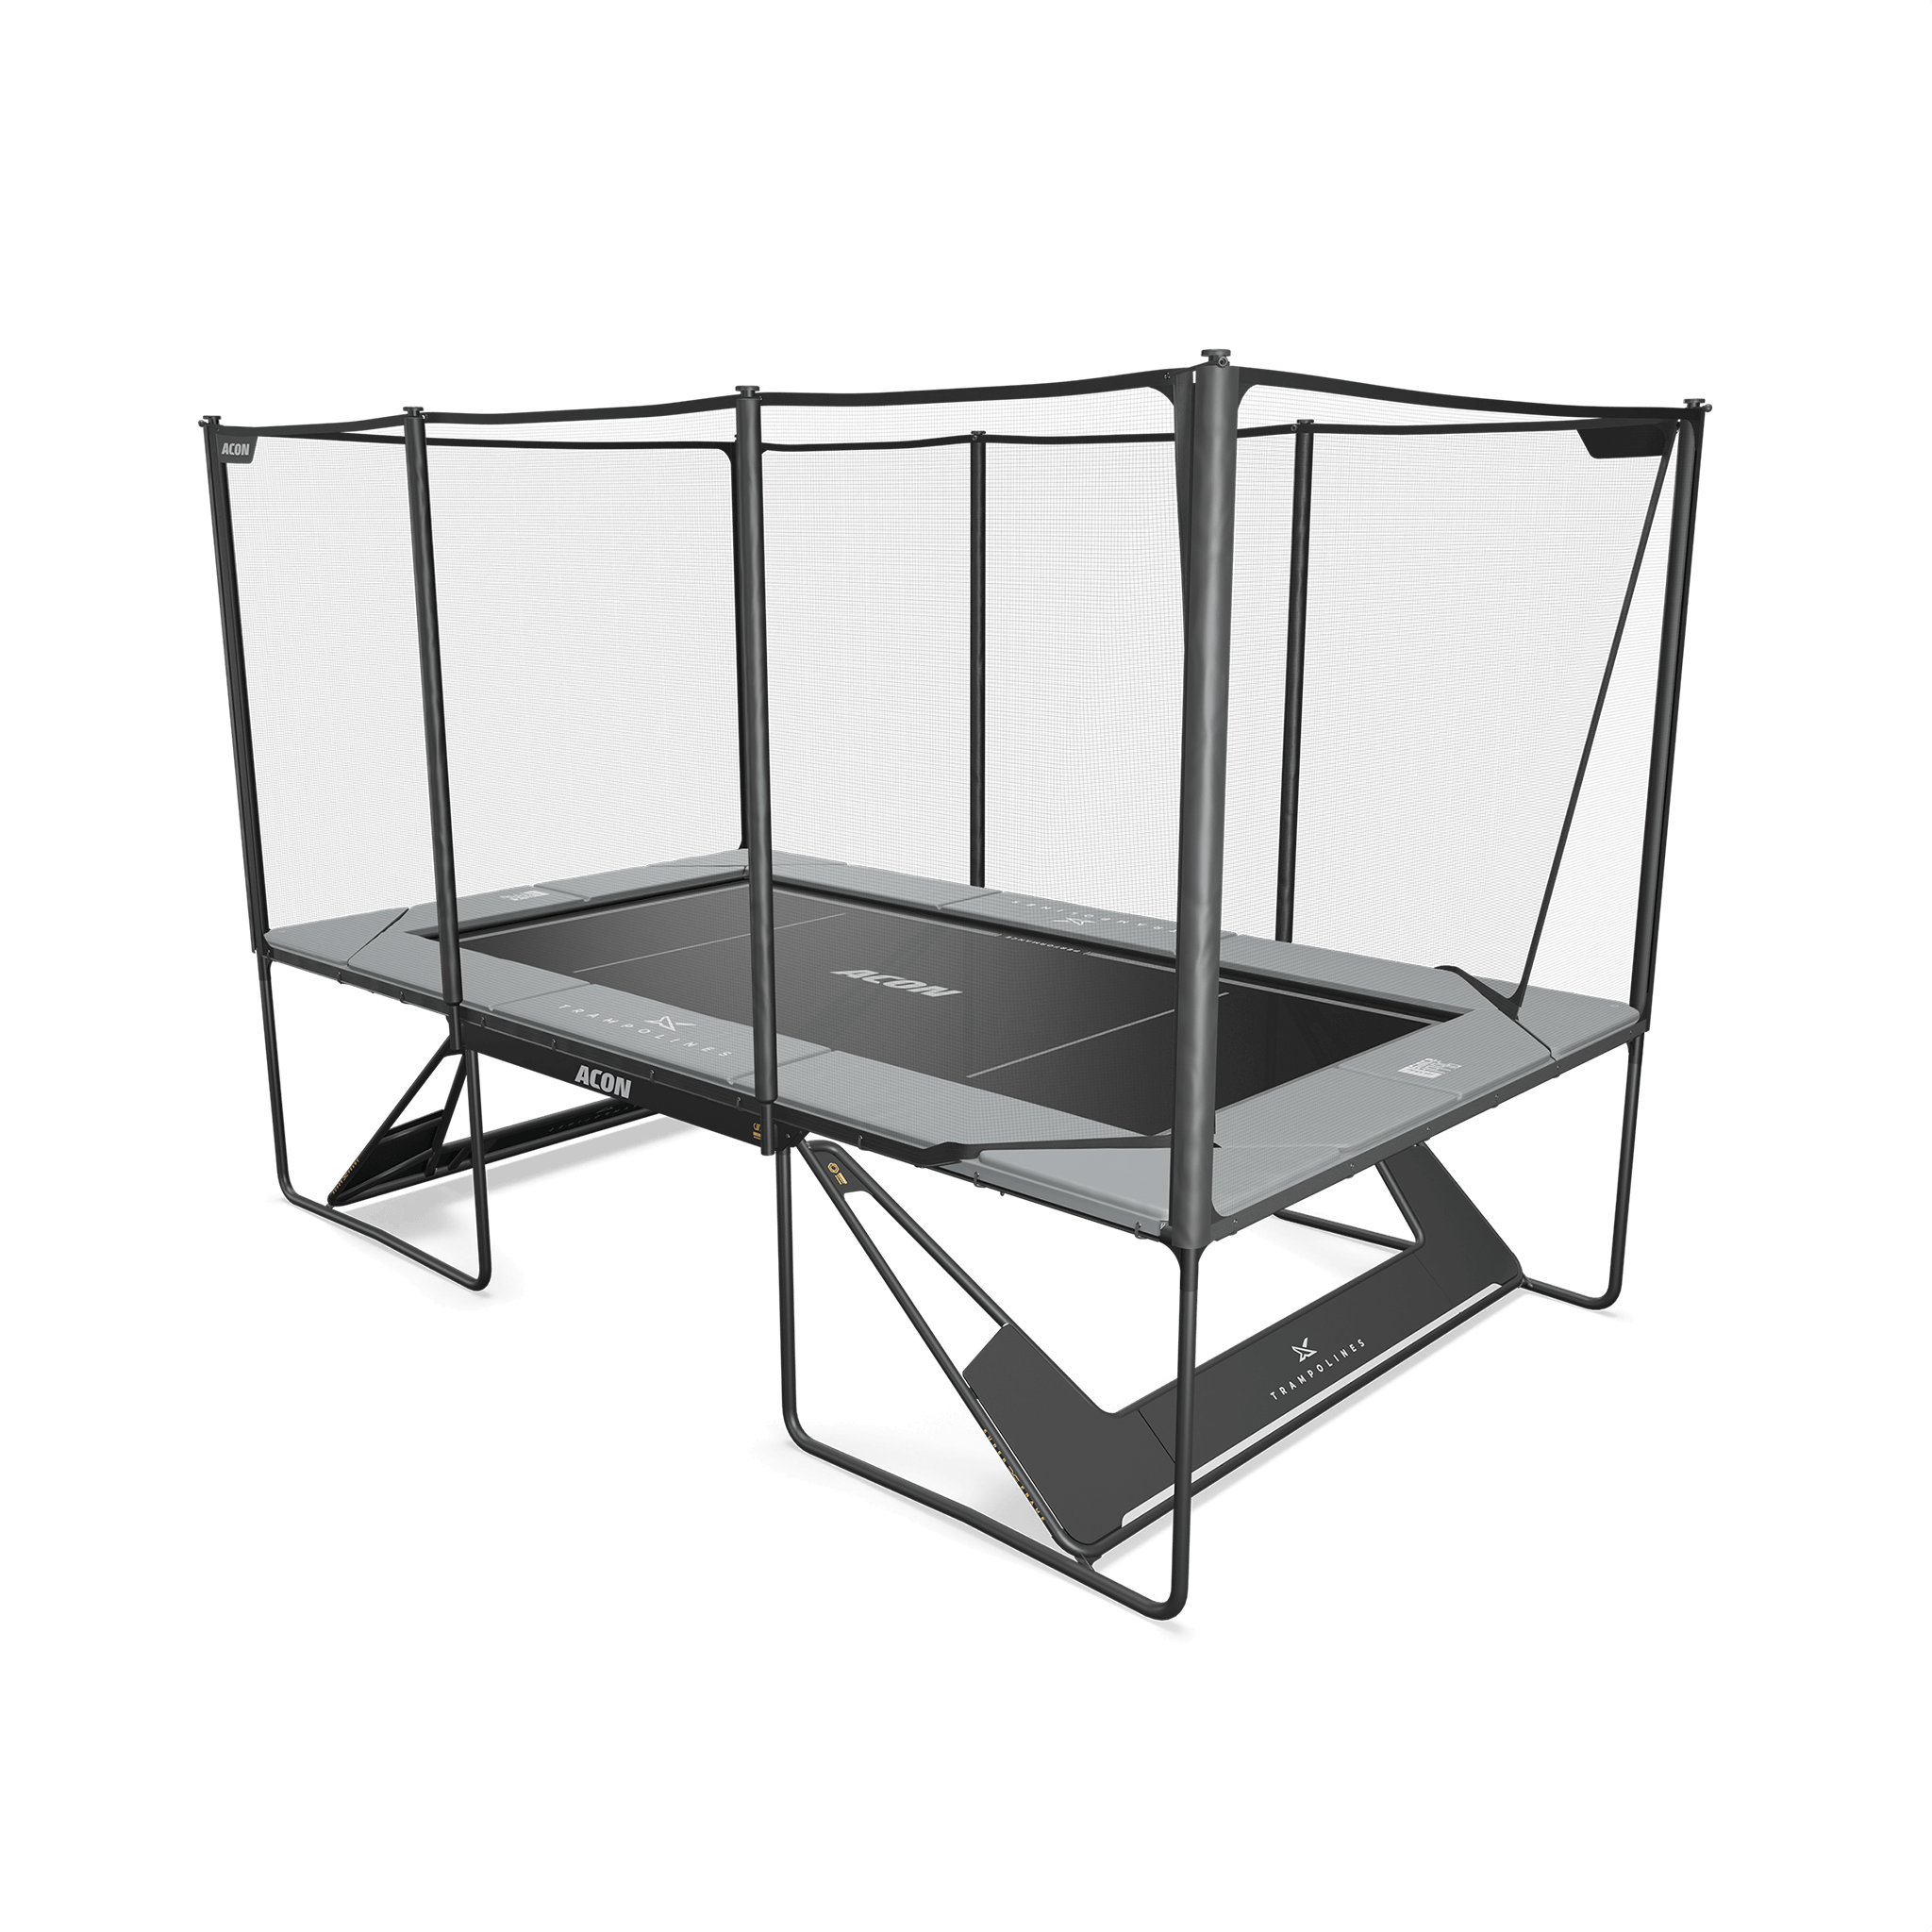 mage du tapis Performance installé sur un trampoline Acon X